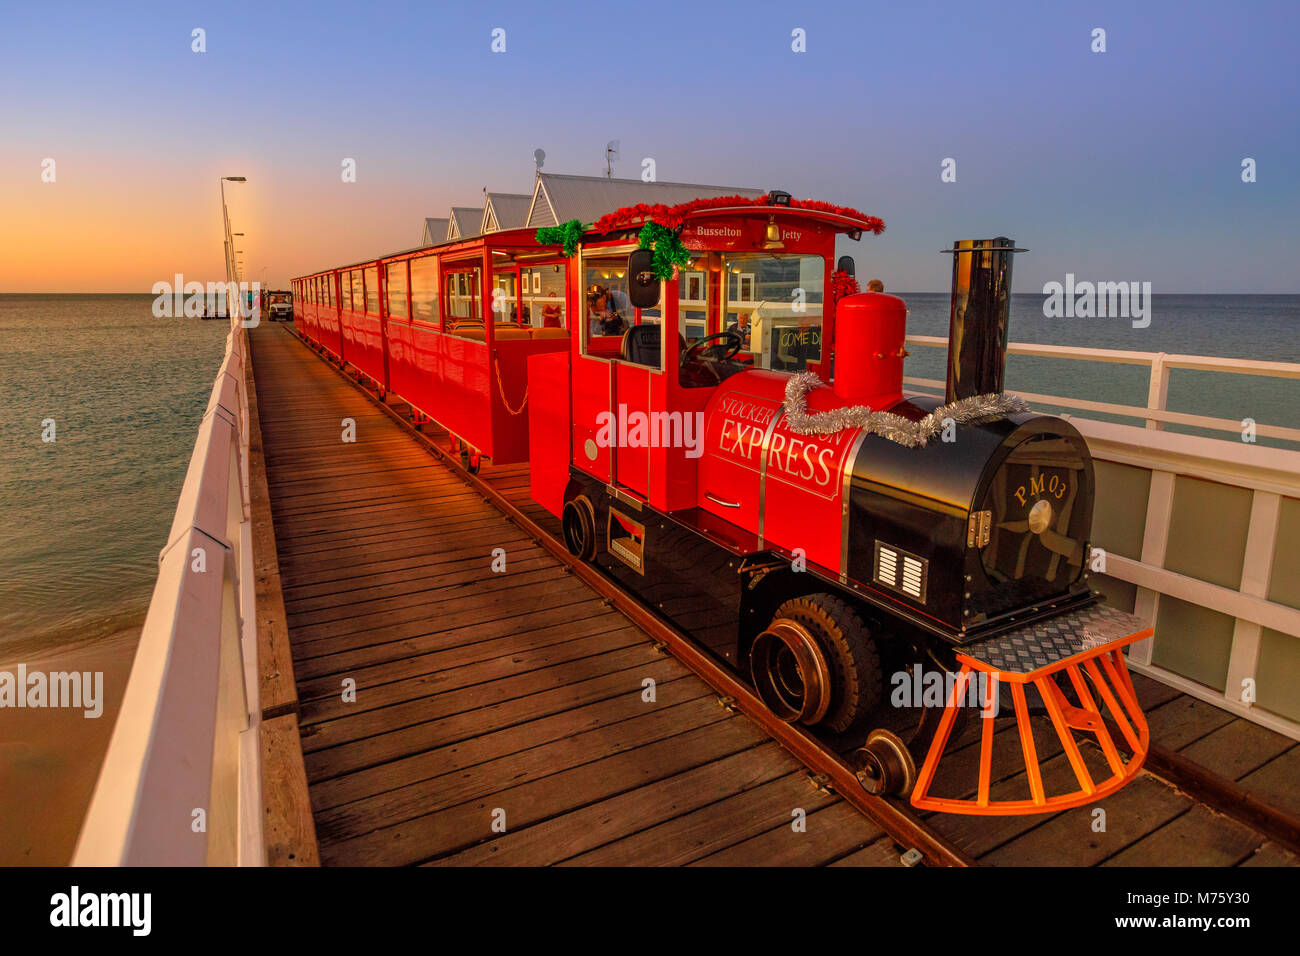 Busselton, Australien - 30 Dezember 2017: Busselton Jetty Zug auf der längsten hölzernen Pier Titel in der Welt erstreckt sich fast 2 km zum Meer. Malerische iconic in Western Australia in der Dämmerung Stockfoto